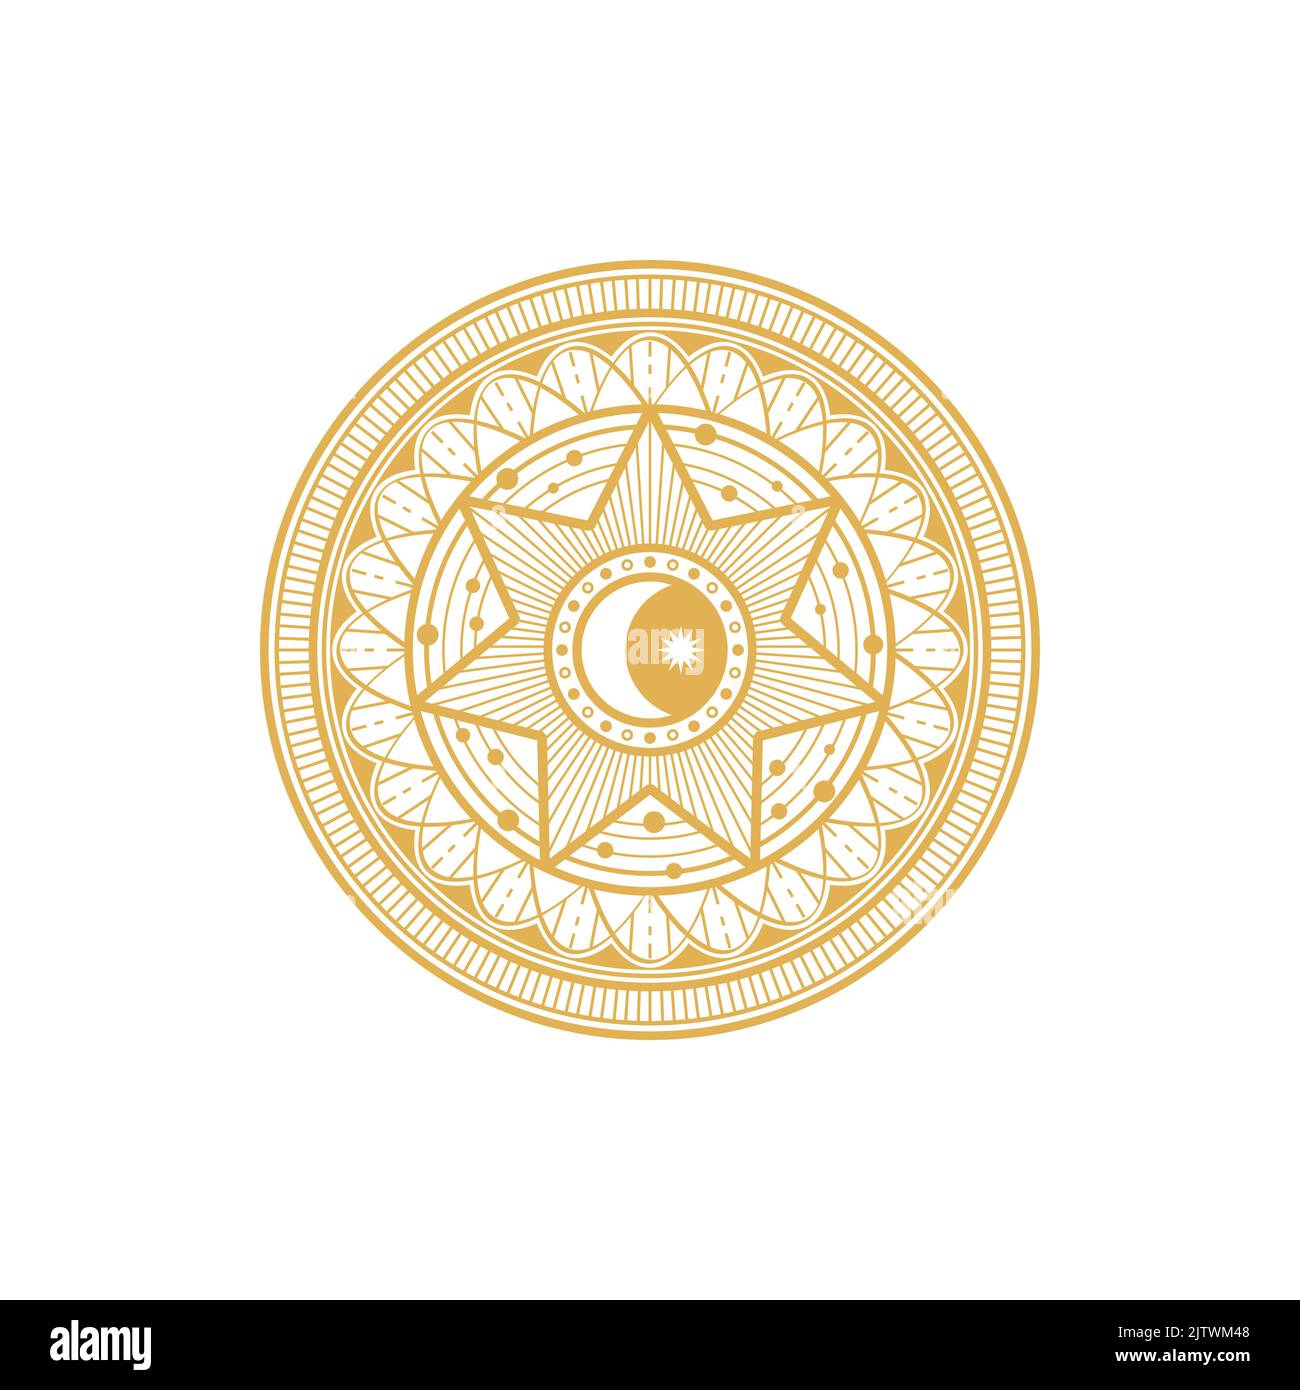 Runde ethnische Amulett Magie Astrologie Symbol isoliert goldenen Kreis. Vektor Tarot Talisman mit Mond und Stern, Sonne und ethnischen Ornament. Freimaurer oder Freimaurer Symbol des Glücks, alte Ägypten Münze Stock Vektor